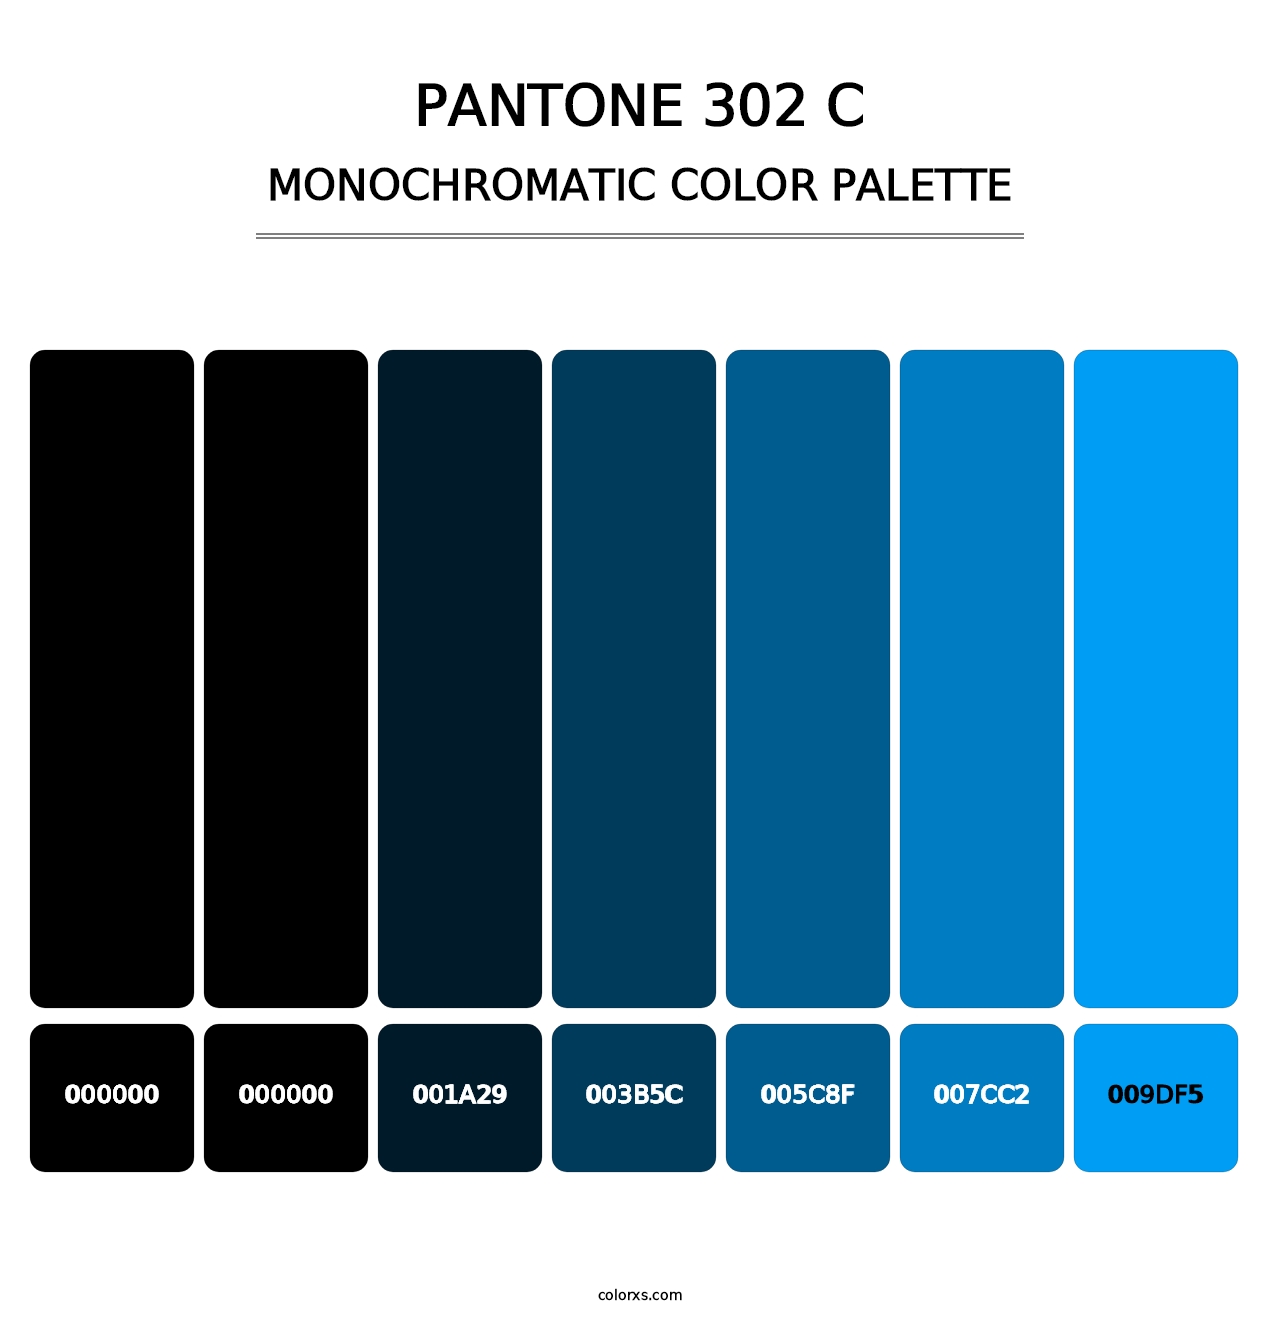 PANTONE 302 C - Monochromatic Color Palette